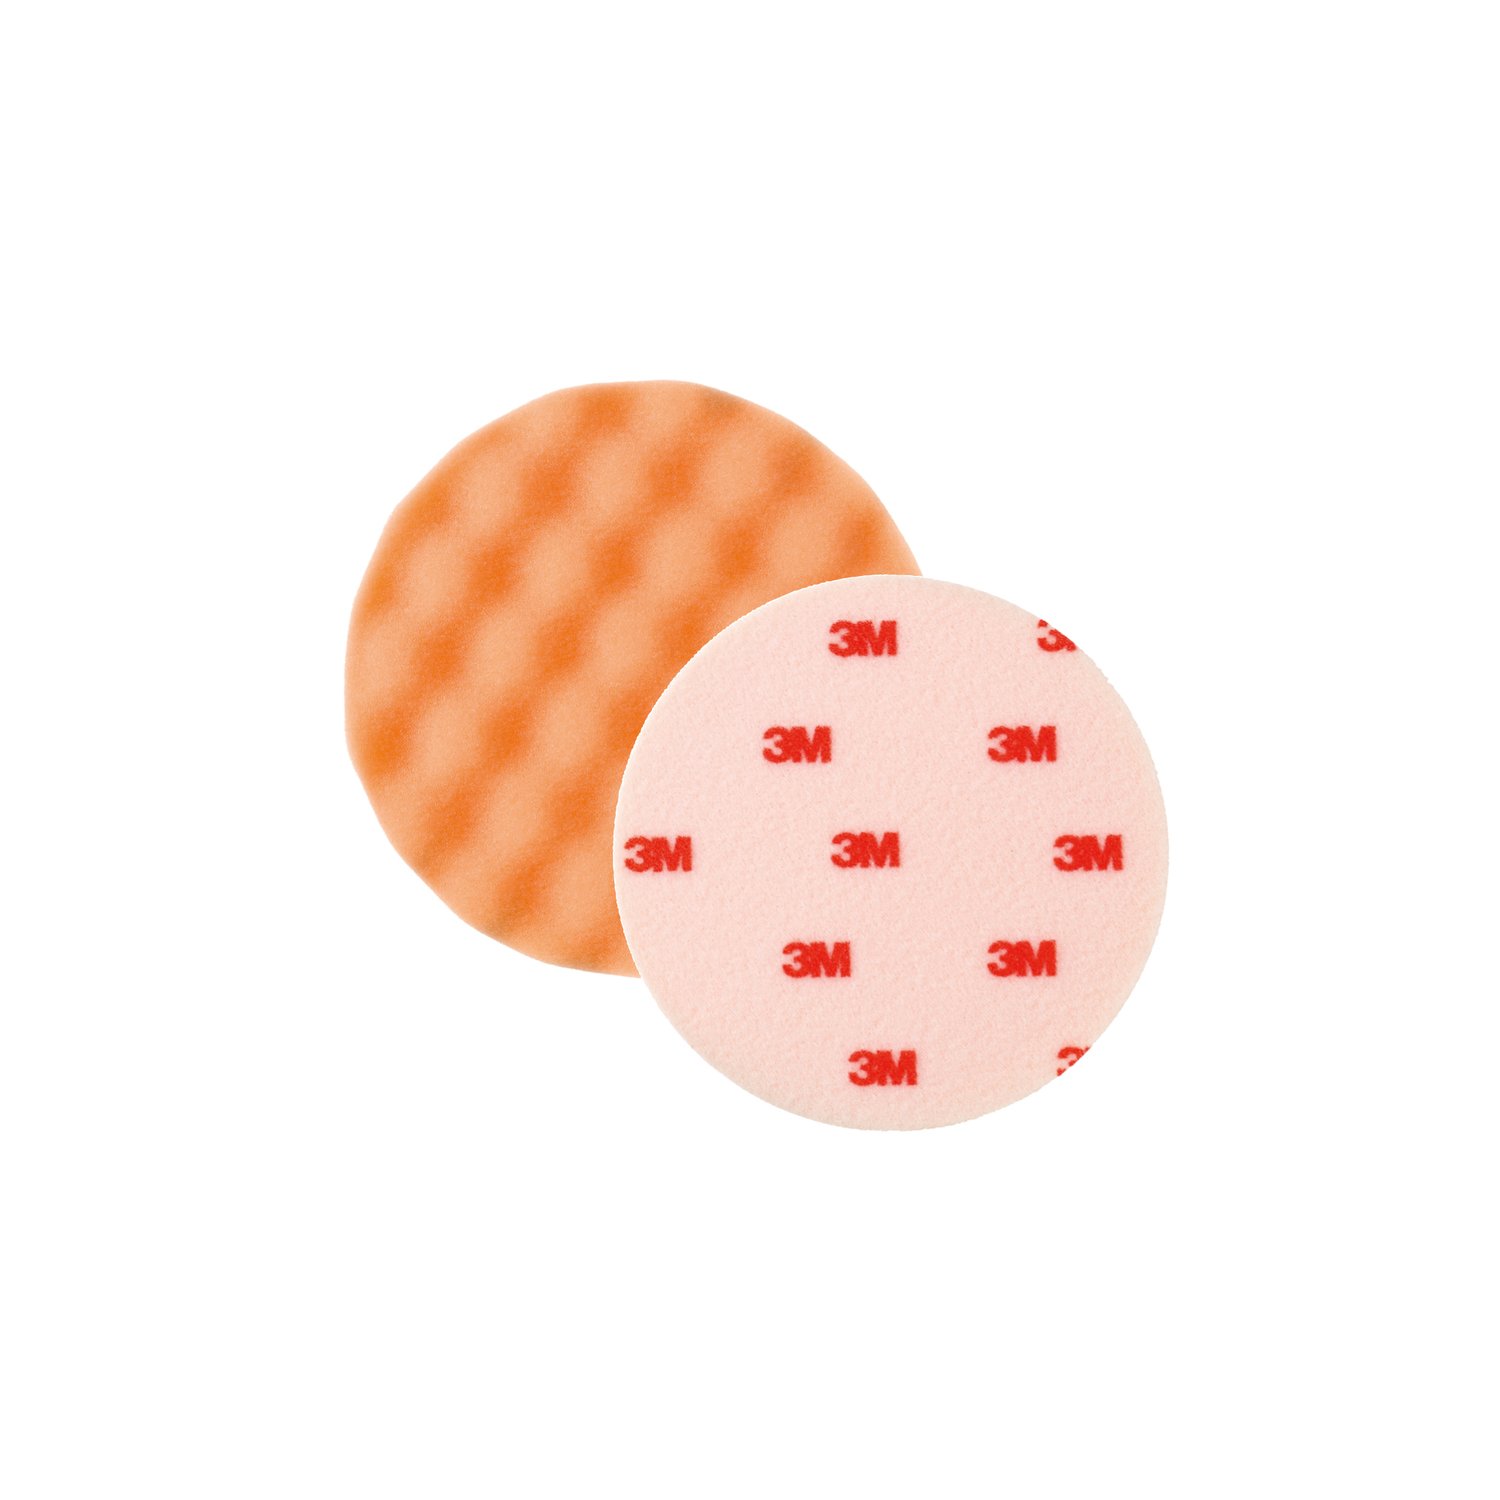 3M Perfect-it III Polierpad orange, Durchmesser 75mm, 4er Set von 3M